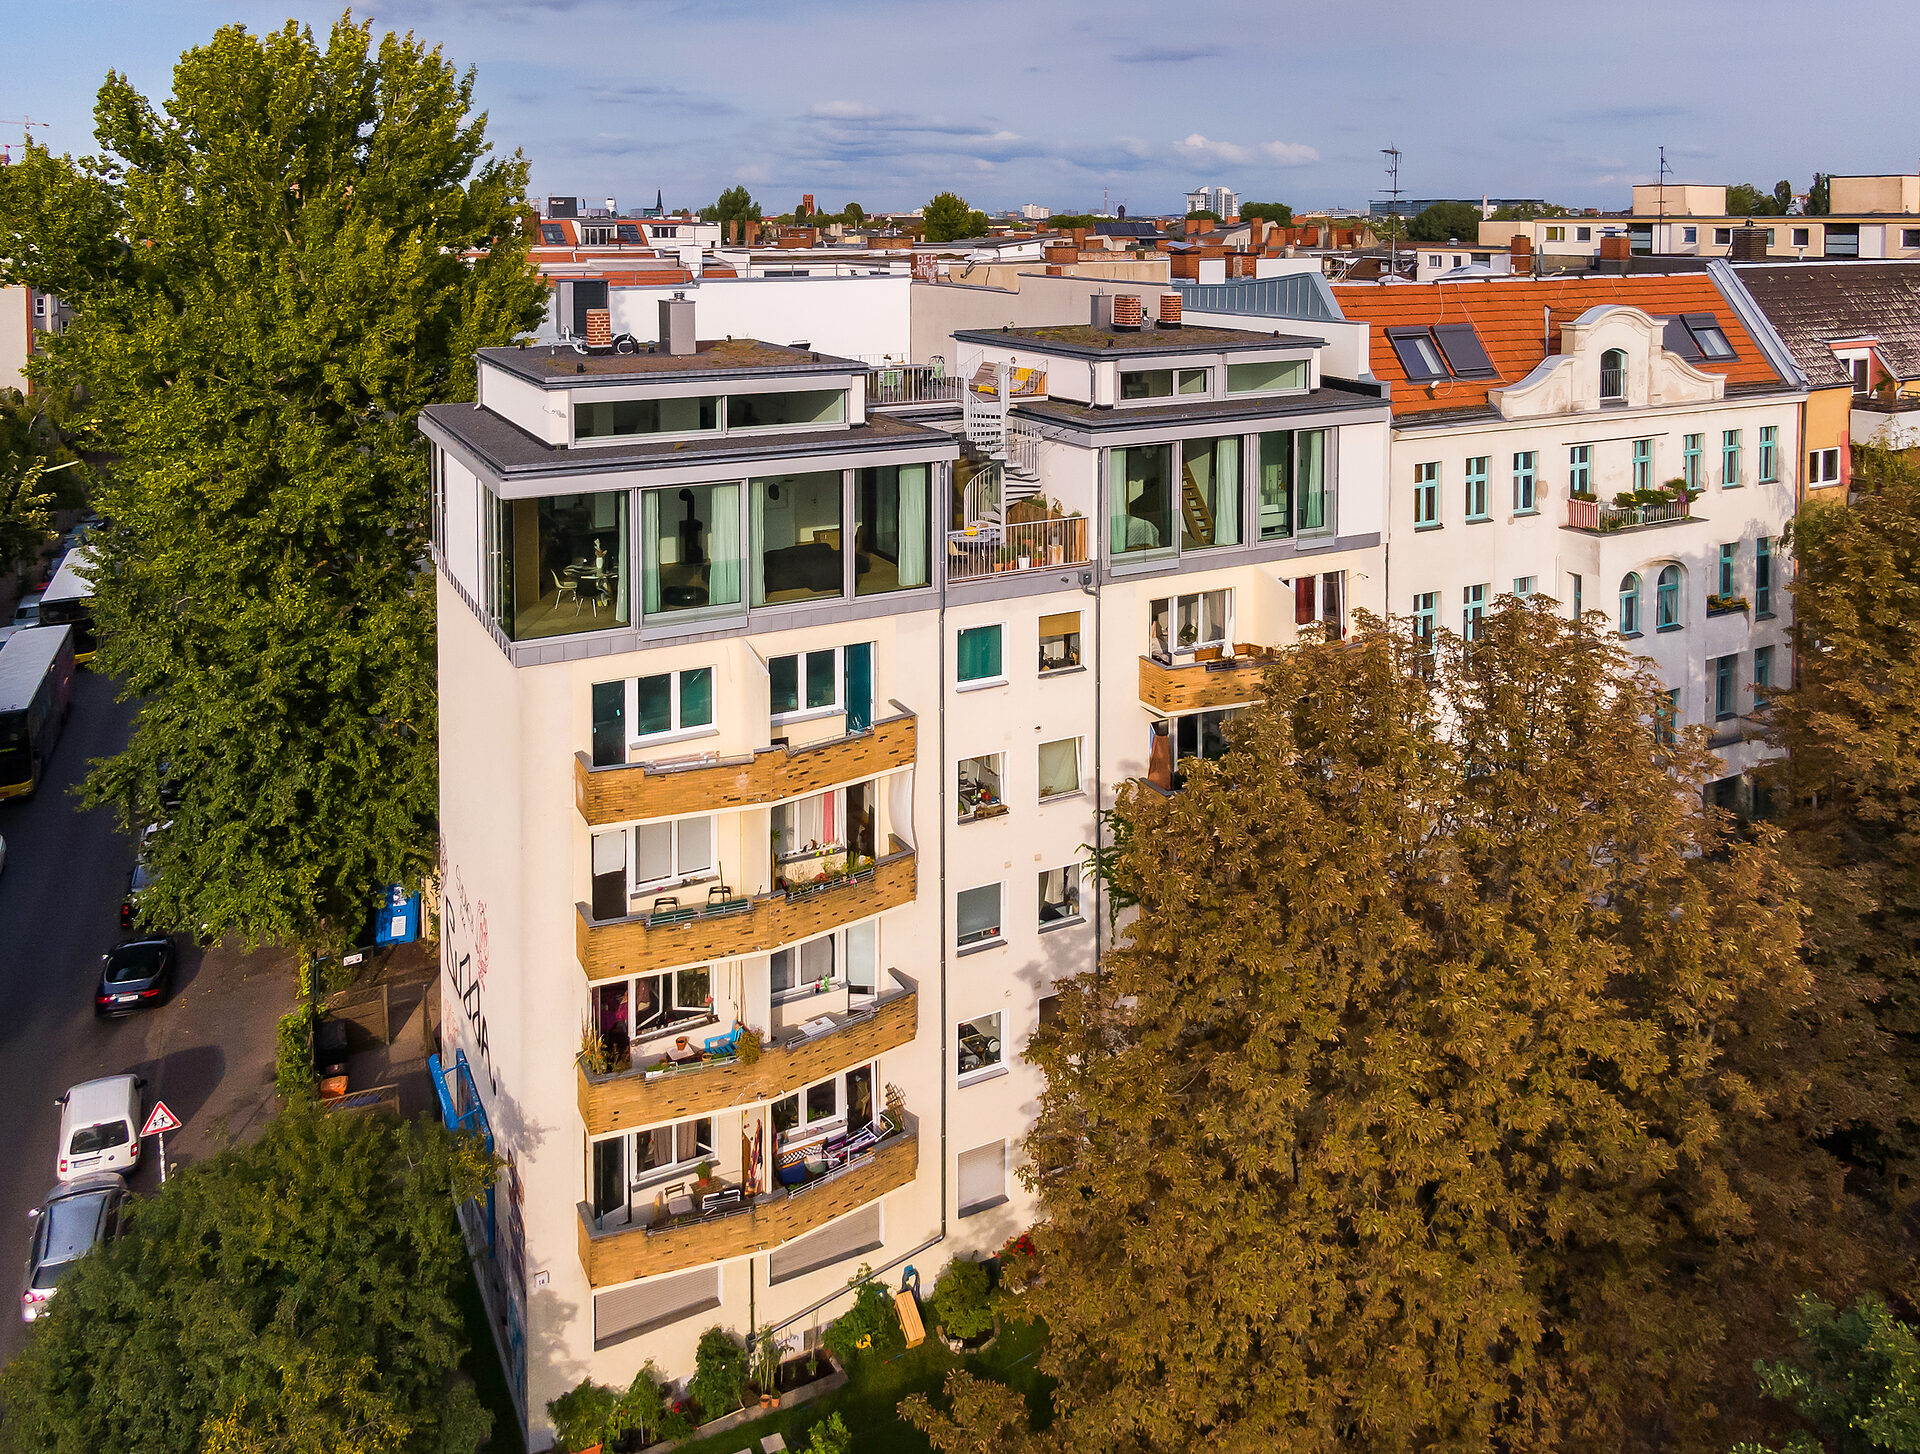 Der Gegenentwurf zur weiteren Flächenversiegelung im urbanen Raum in Berlin: Mit der Aufstockung eines Gebäudes aus den 50er-Jahren wurde eine ungenutzte Dachfläche zum Wohnraum. (Foto: Baufritz)